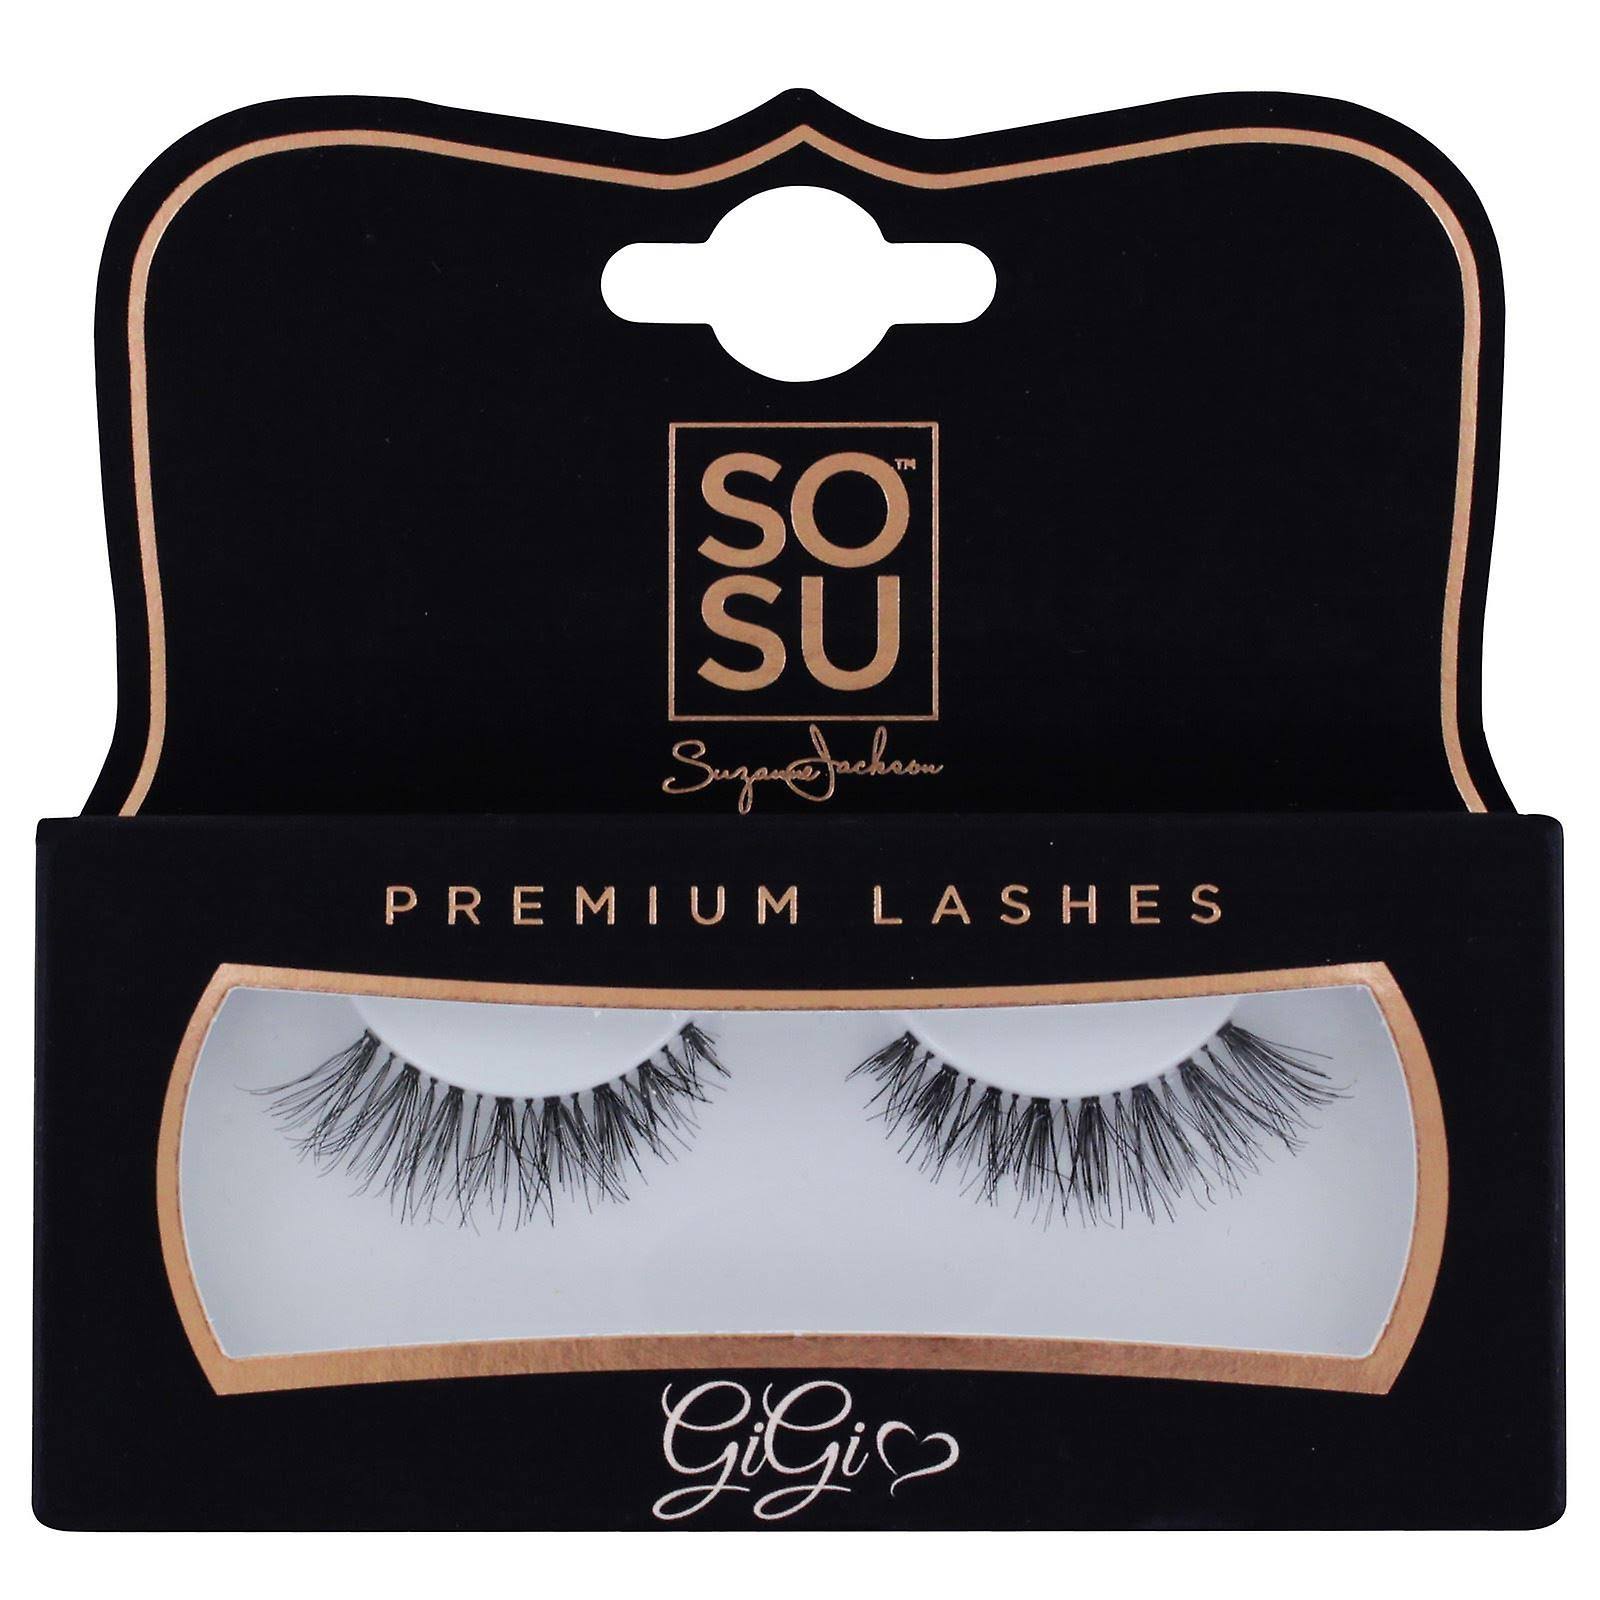 SOSU Premium Lashes - Sophia - False Eyelashes